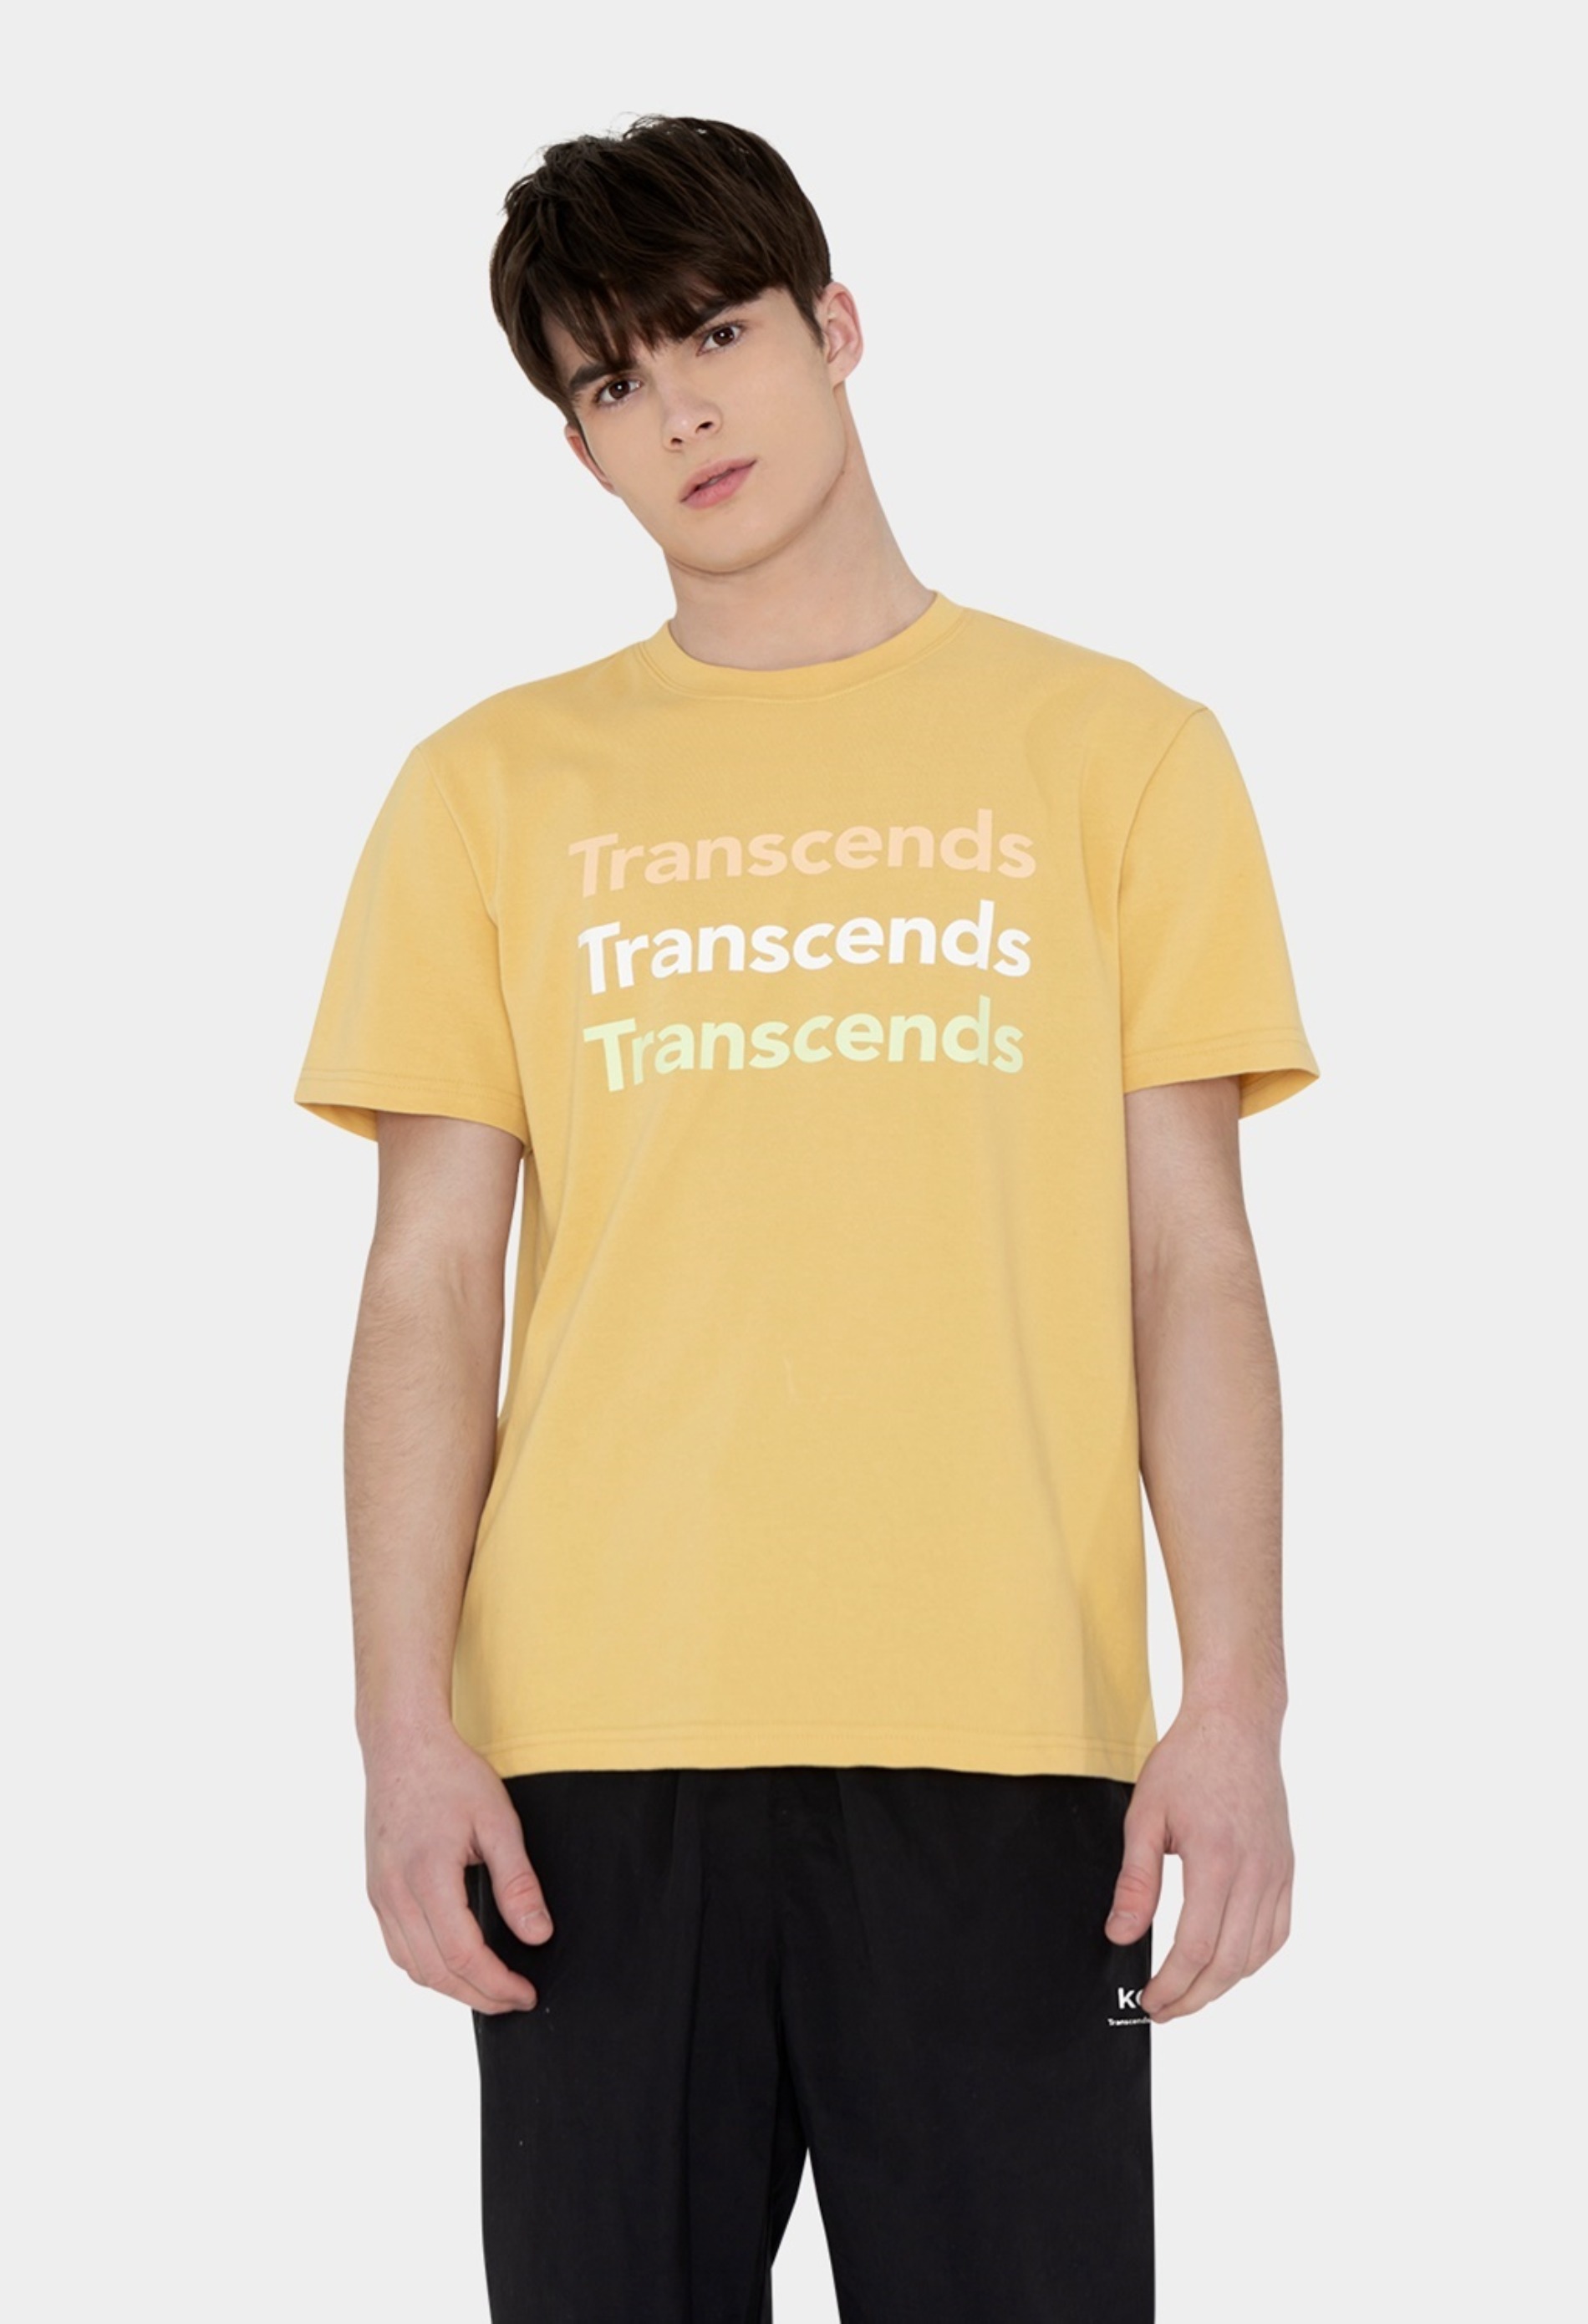 keek [Unisex] Transcends Graphic T-shirts - Yellow 스트릿패션 유니섹스브랜드 커플시밀러룩 남자쇼핑몰 여성의류쇼핑몰 후드티 힙색